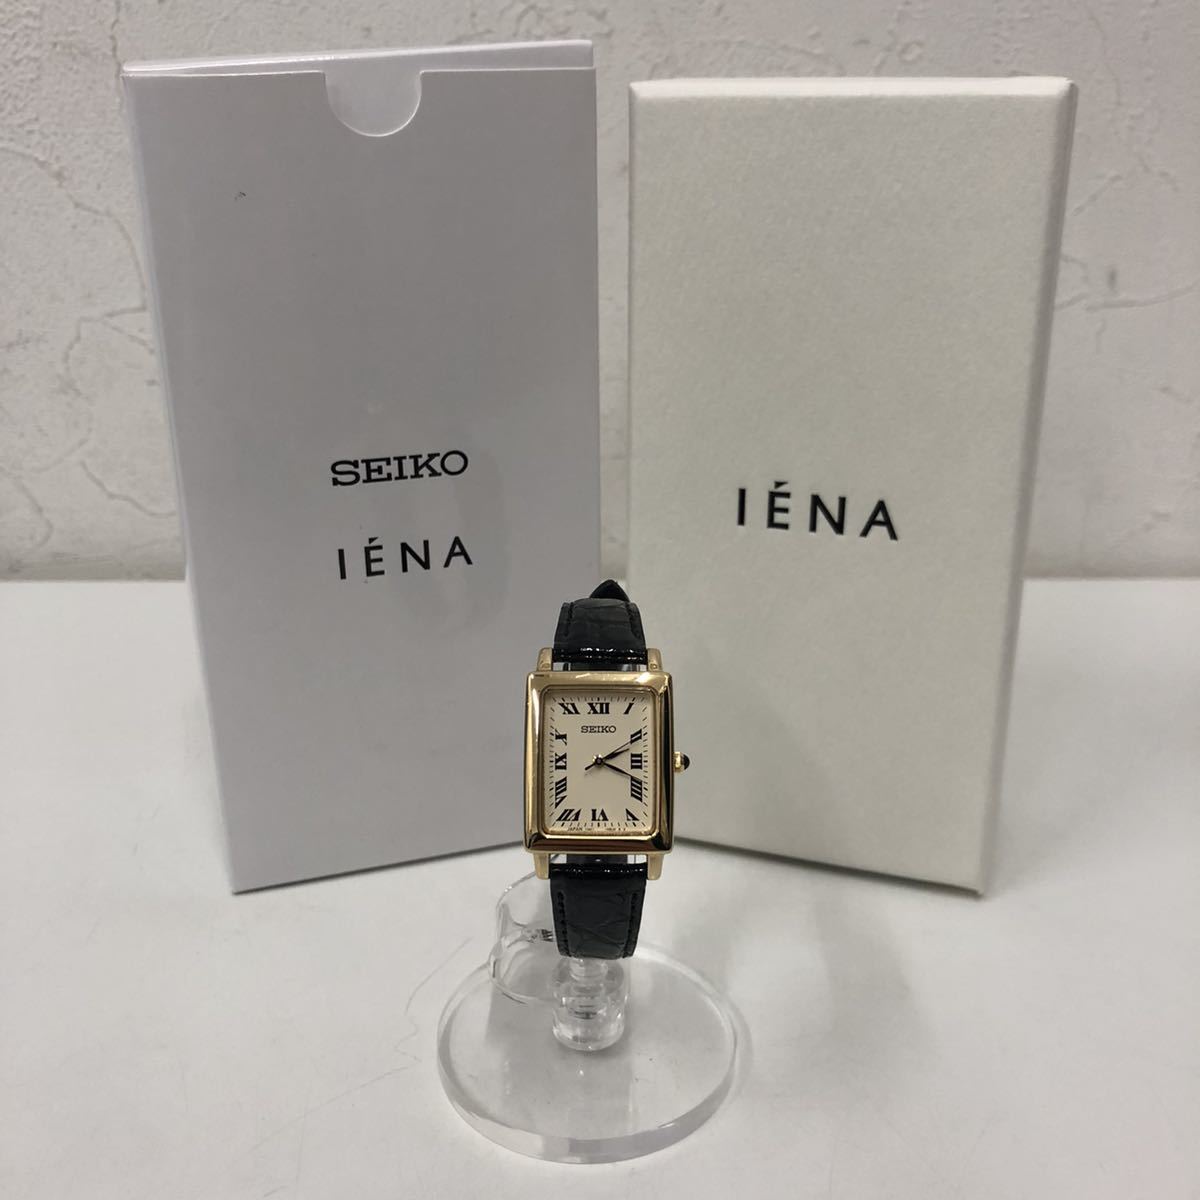 新品本物 イエナ IENA セイコー SEIKO 腕時計 21-090-900-9001-7-1-0